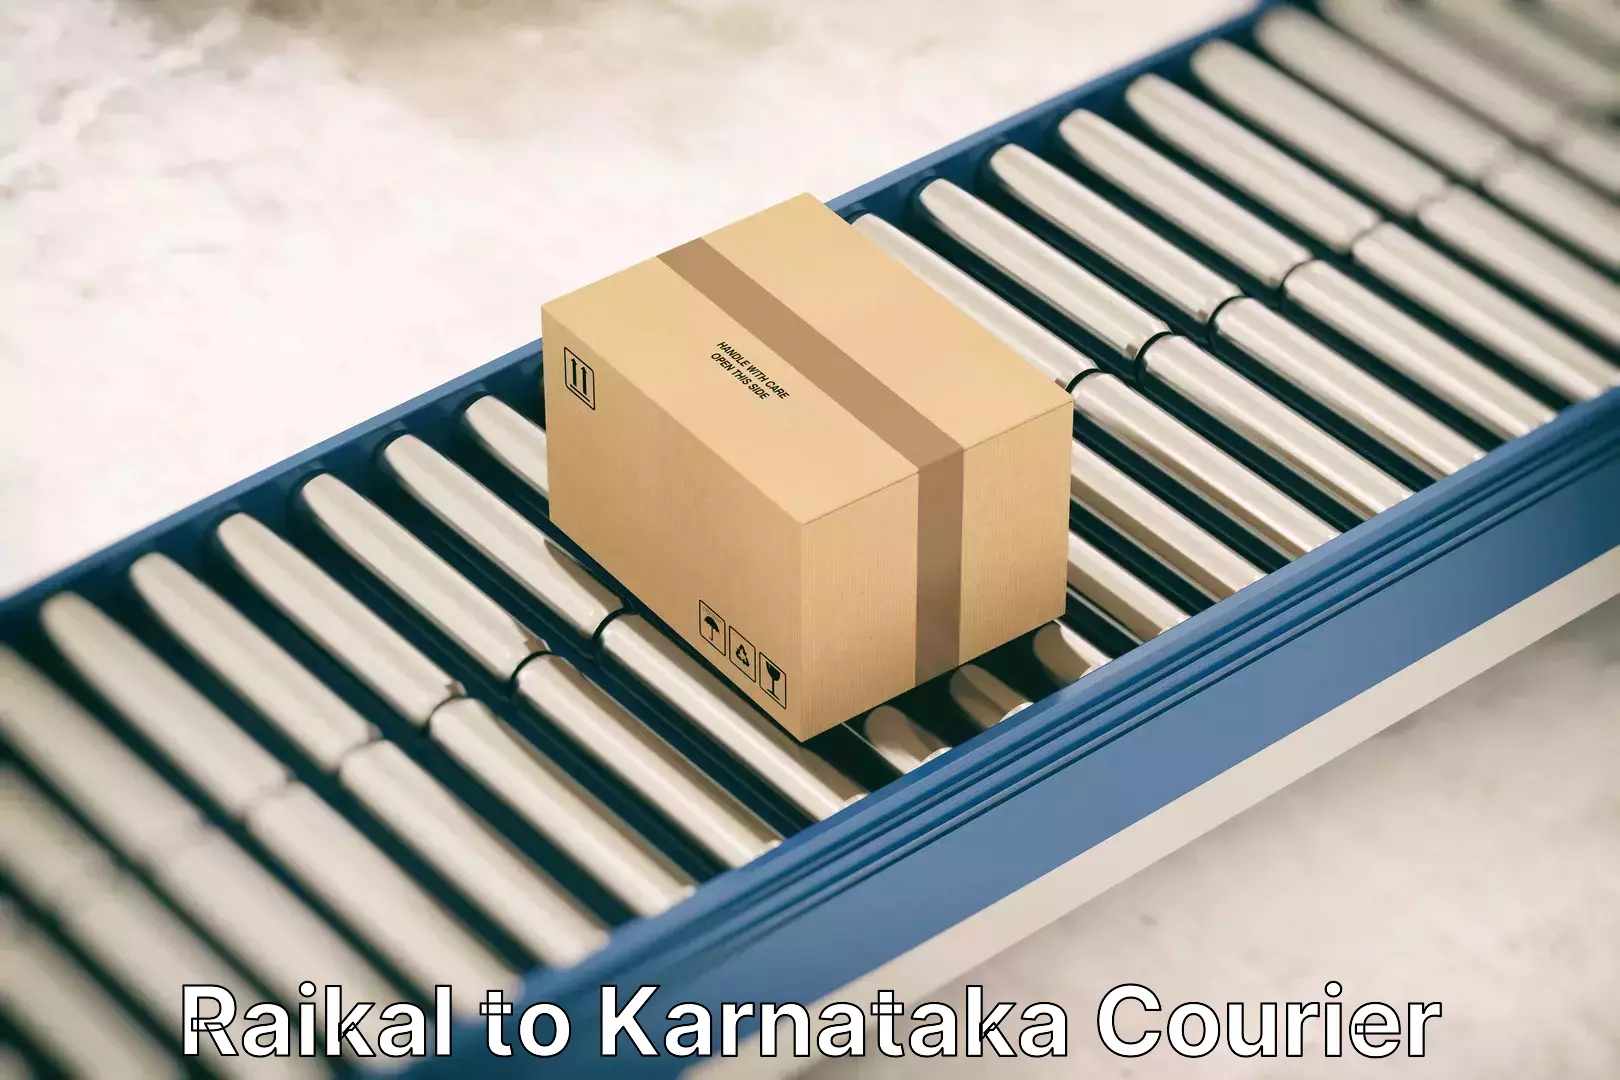 Furniture transport and storage Raikal to Karnataka